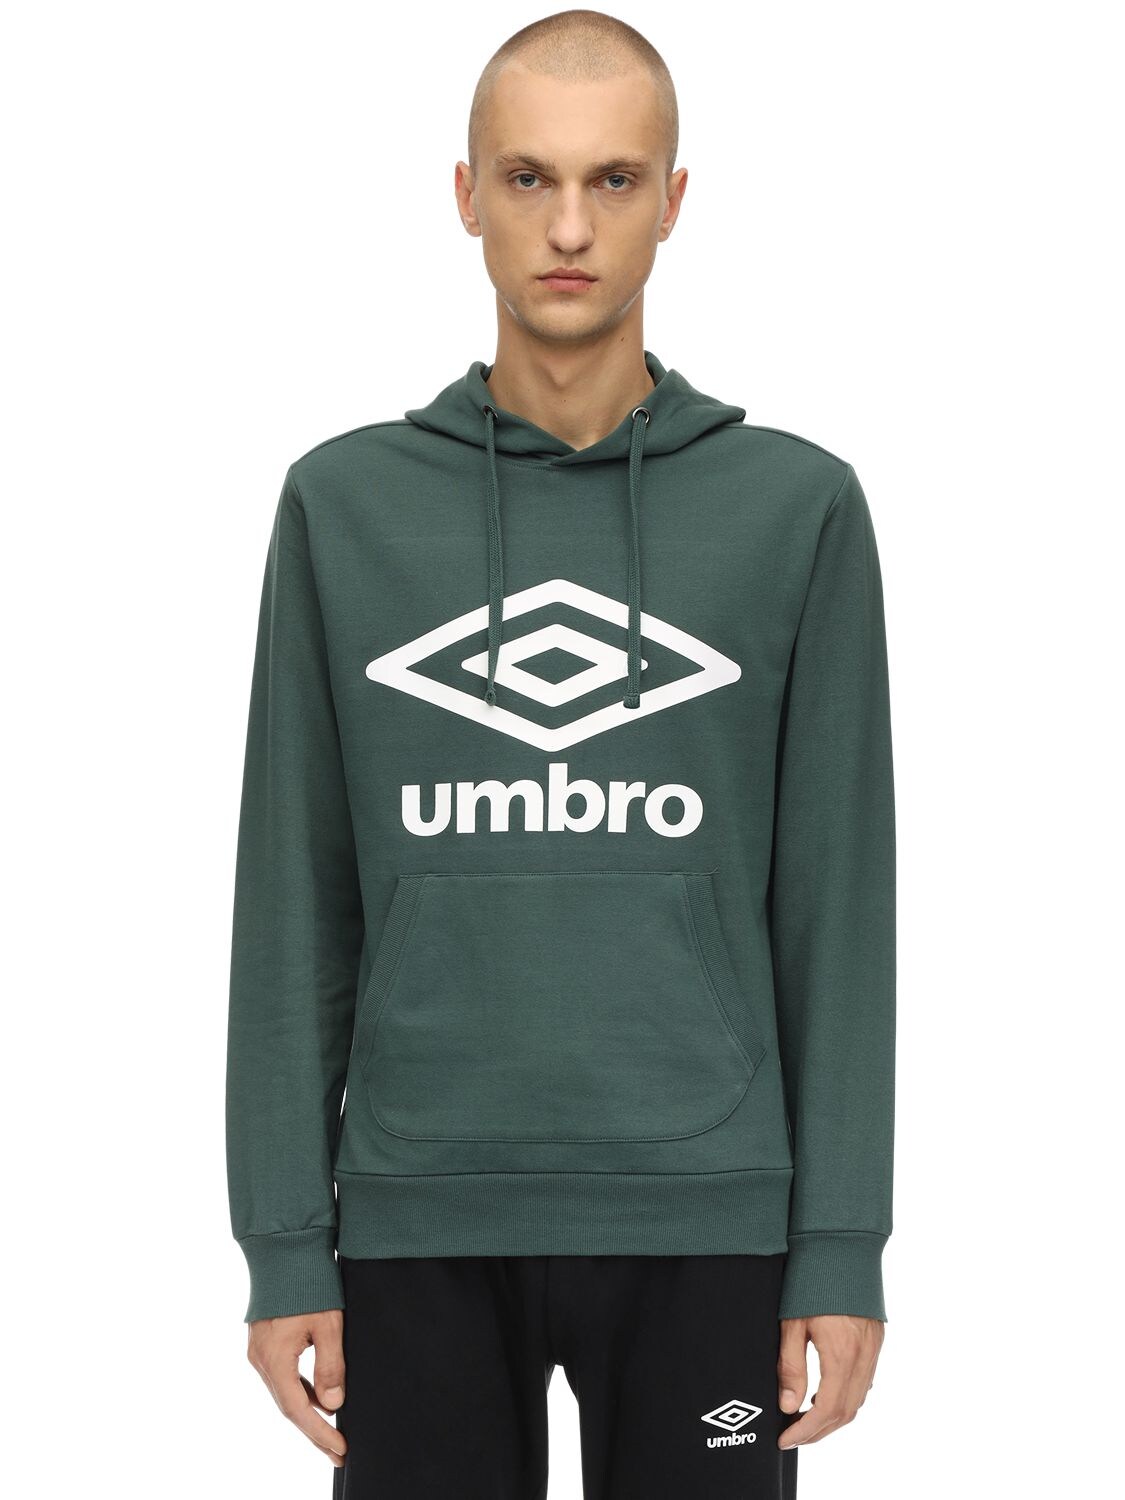 Umbro Logo Cotton Blend Sweatshirt Hoodie In Green